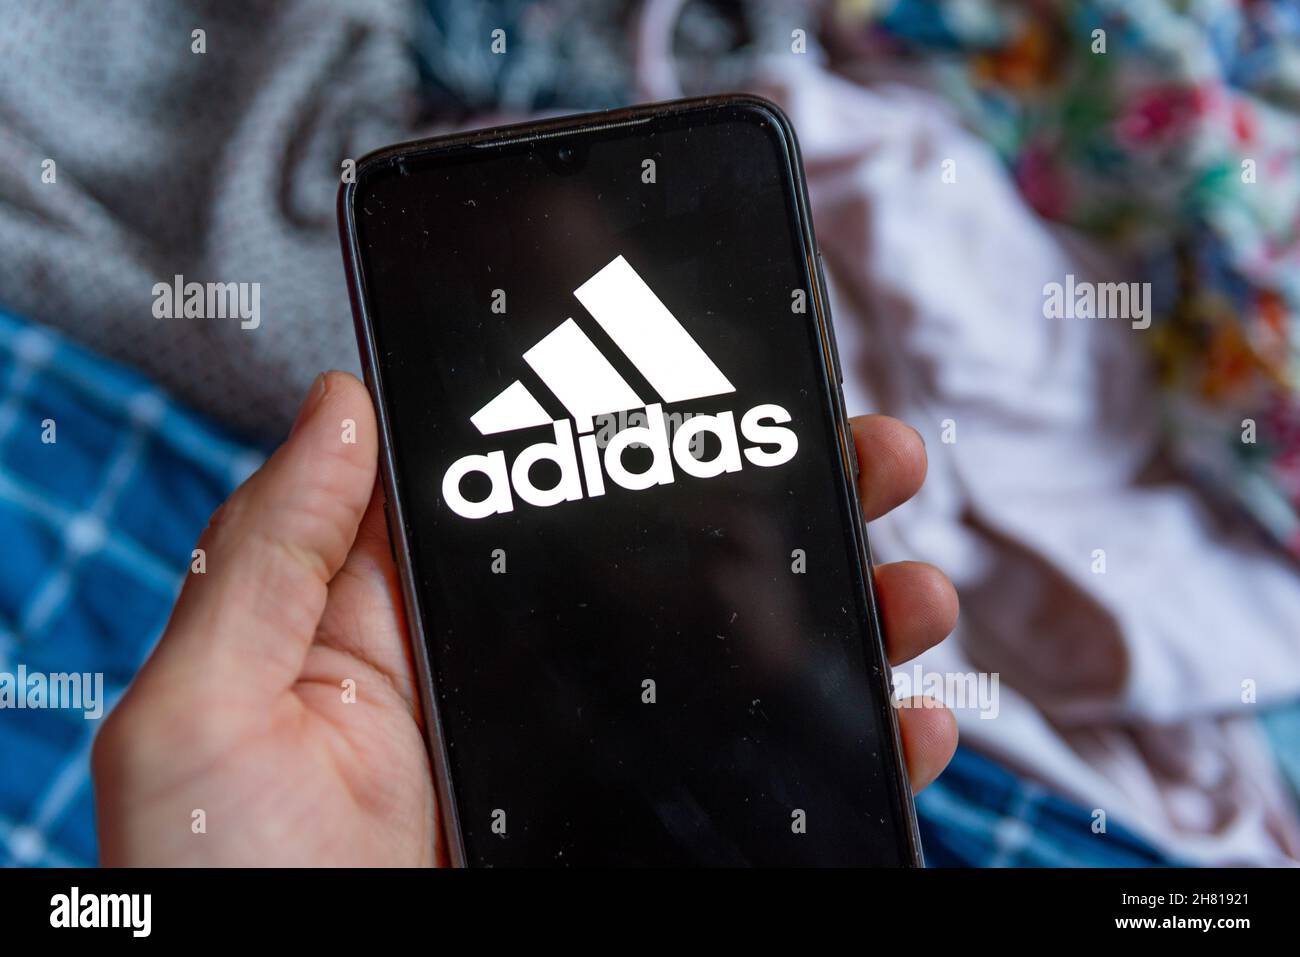 España. 26th Nov, 2021. El logotipo de la aplicación Adidas del minorista de moda se ve en la pantalla de un teléfono en Barcelona, España, el 26 de noviembre de